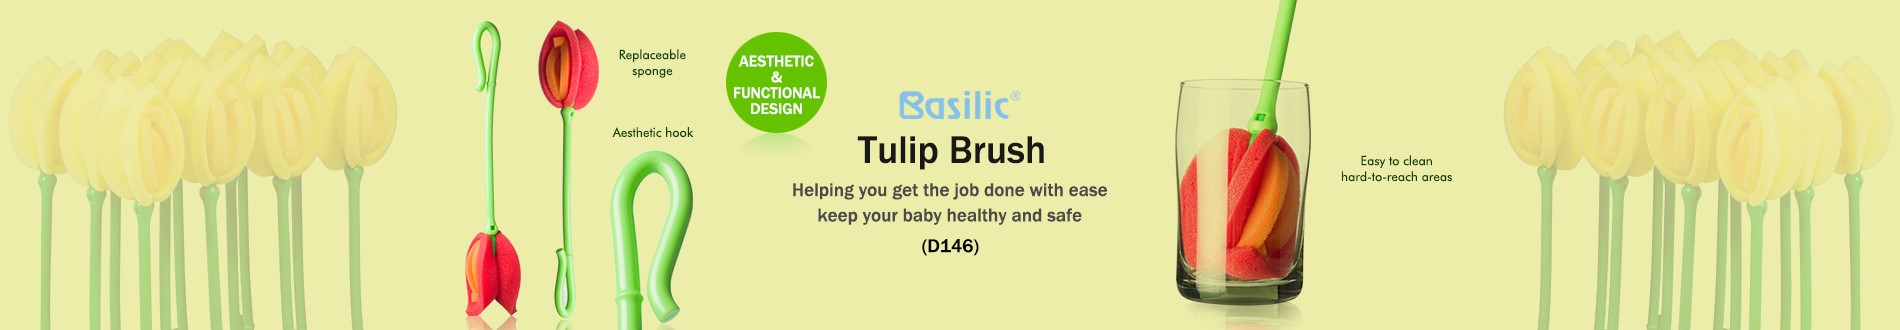 Basilic tulip brush (D146)